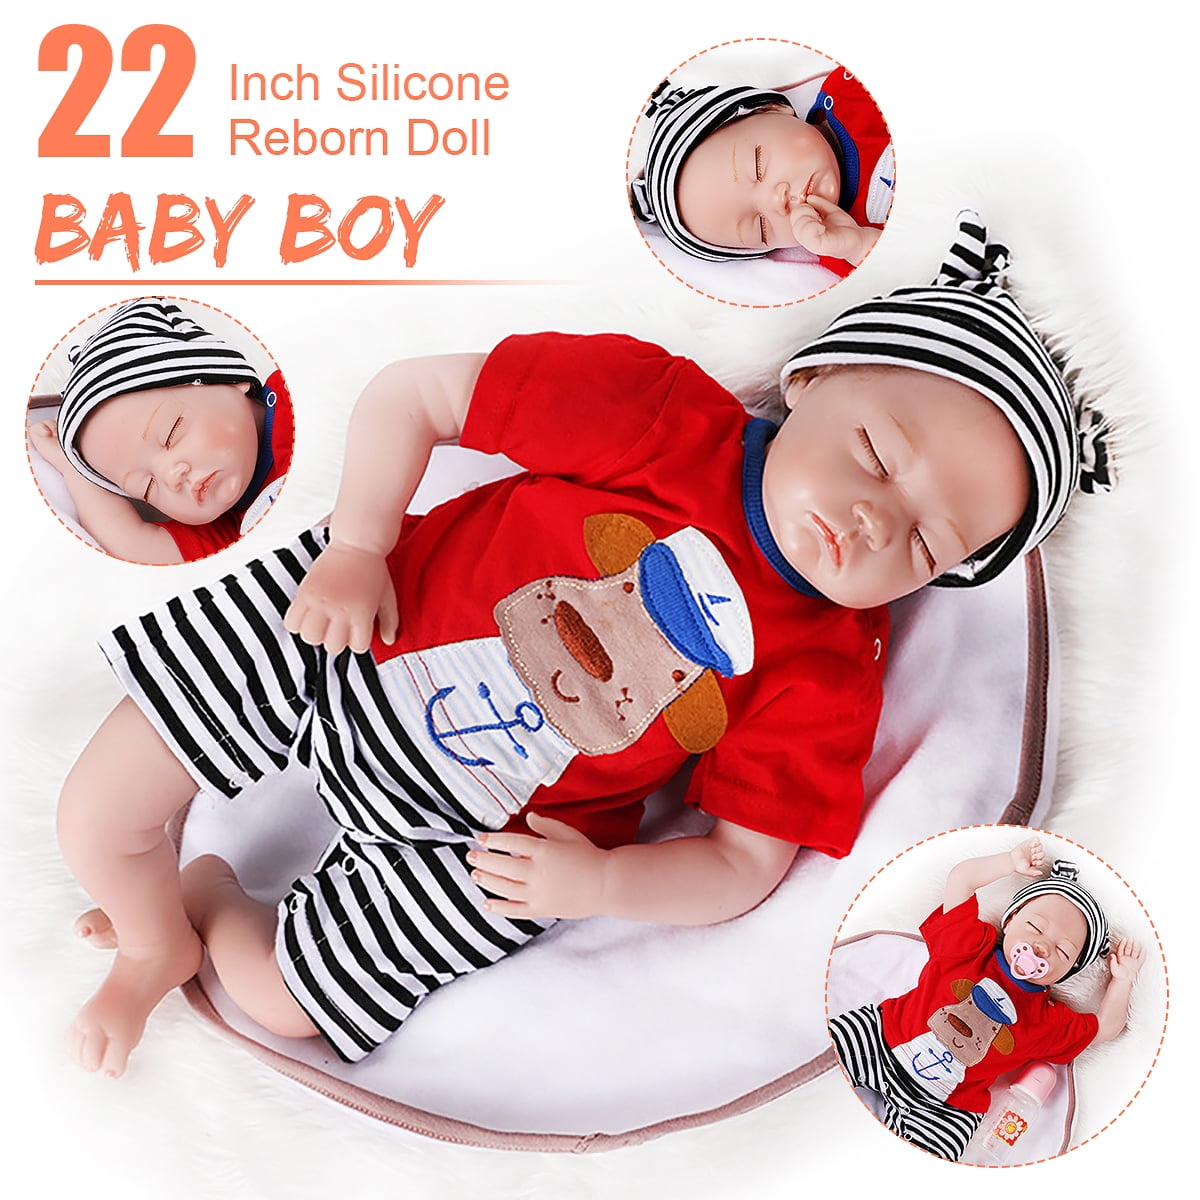 22" Reborn Baby Dolls Vinyl Silicone Boy Doll Lifelike Newborn Babies Xmas Gifts 